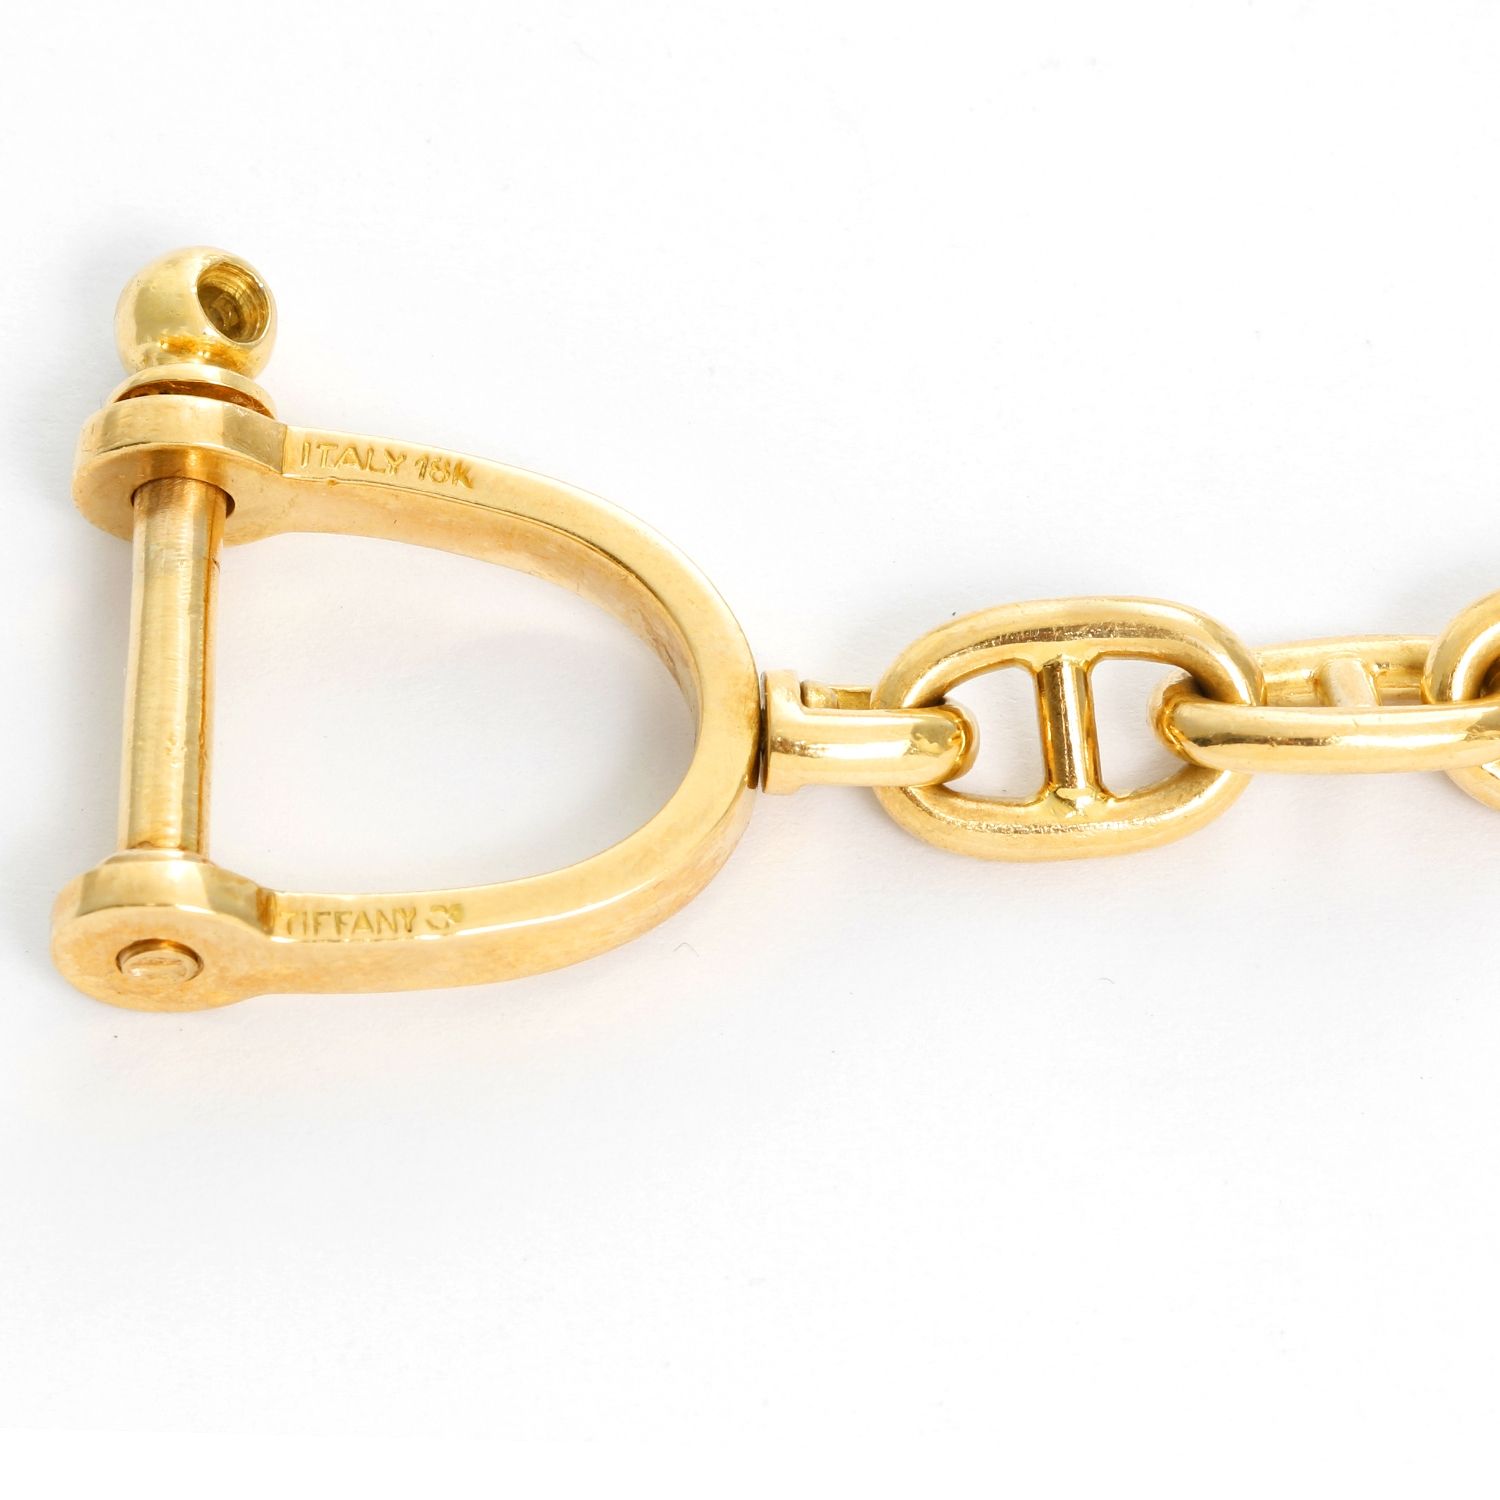 Tiffany & Co. Gold Toned Keychain